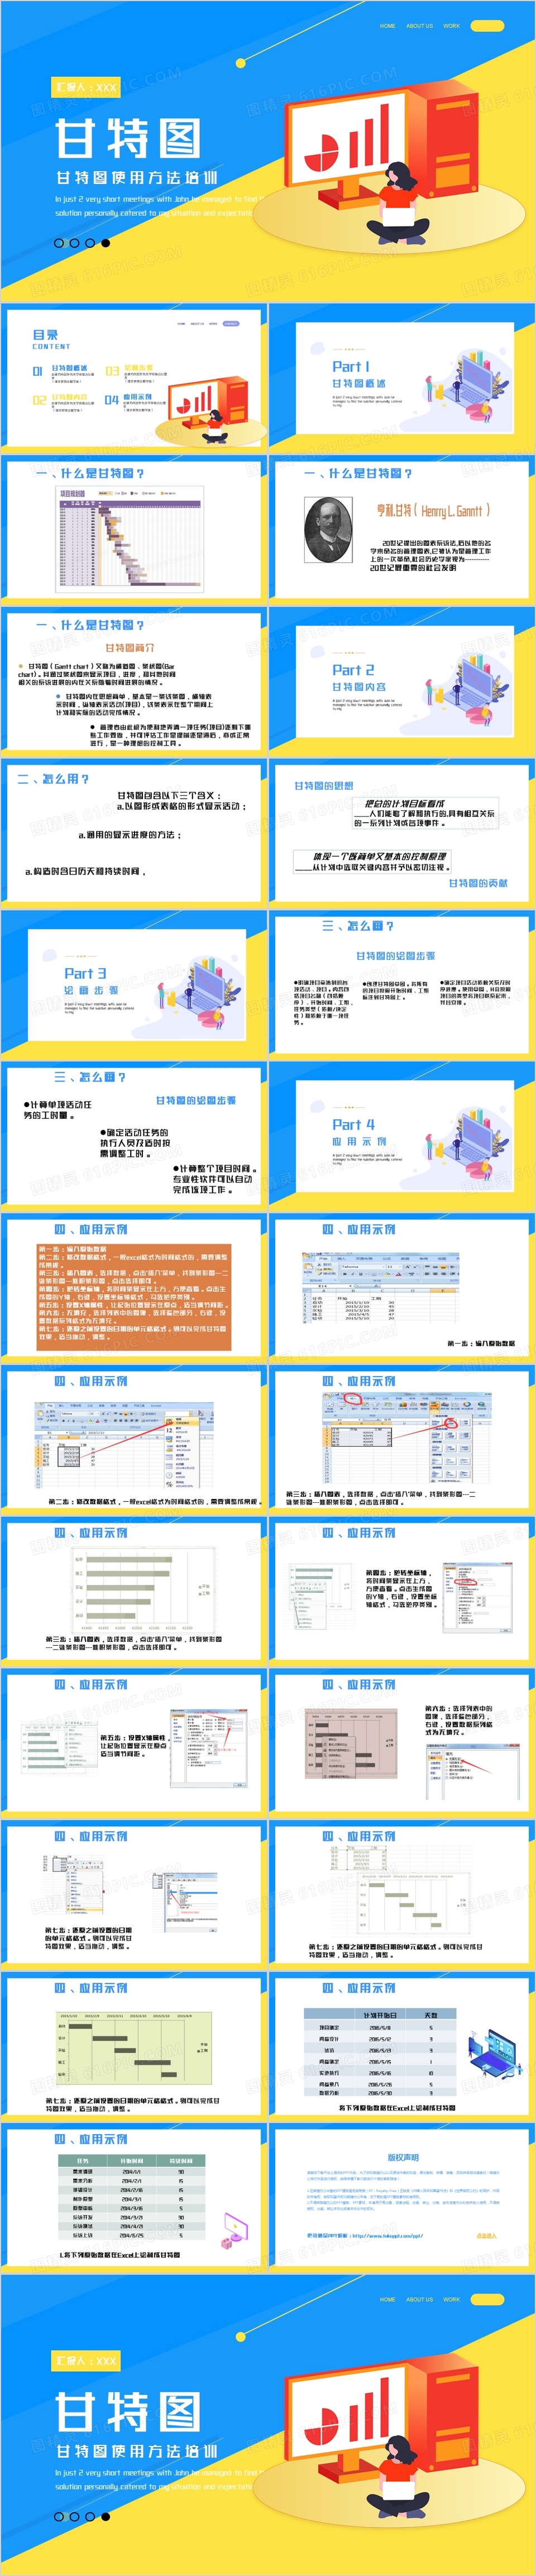 黄蓝撞色商务风甘特图使用方式培训PPT模板